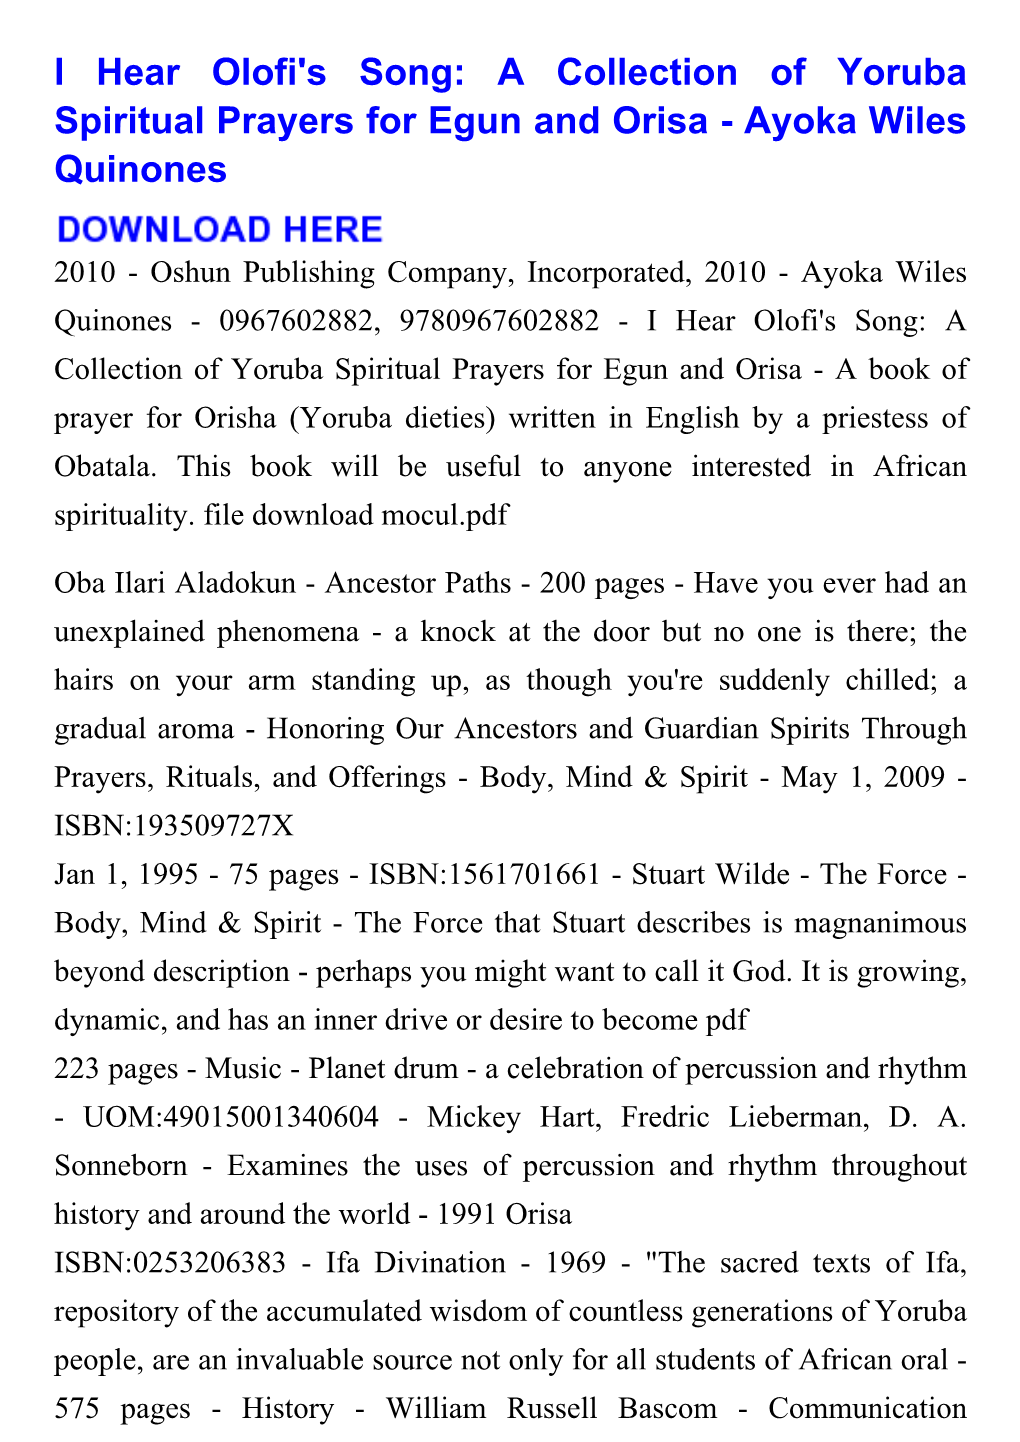 I Hear Olofi's Song: a Collection of Yoruba Spiritual Prayers for Egun and Orisa - Ayoka Wiles Quinones